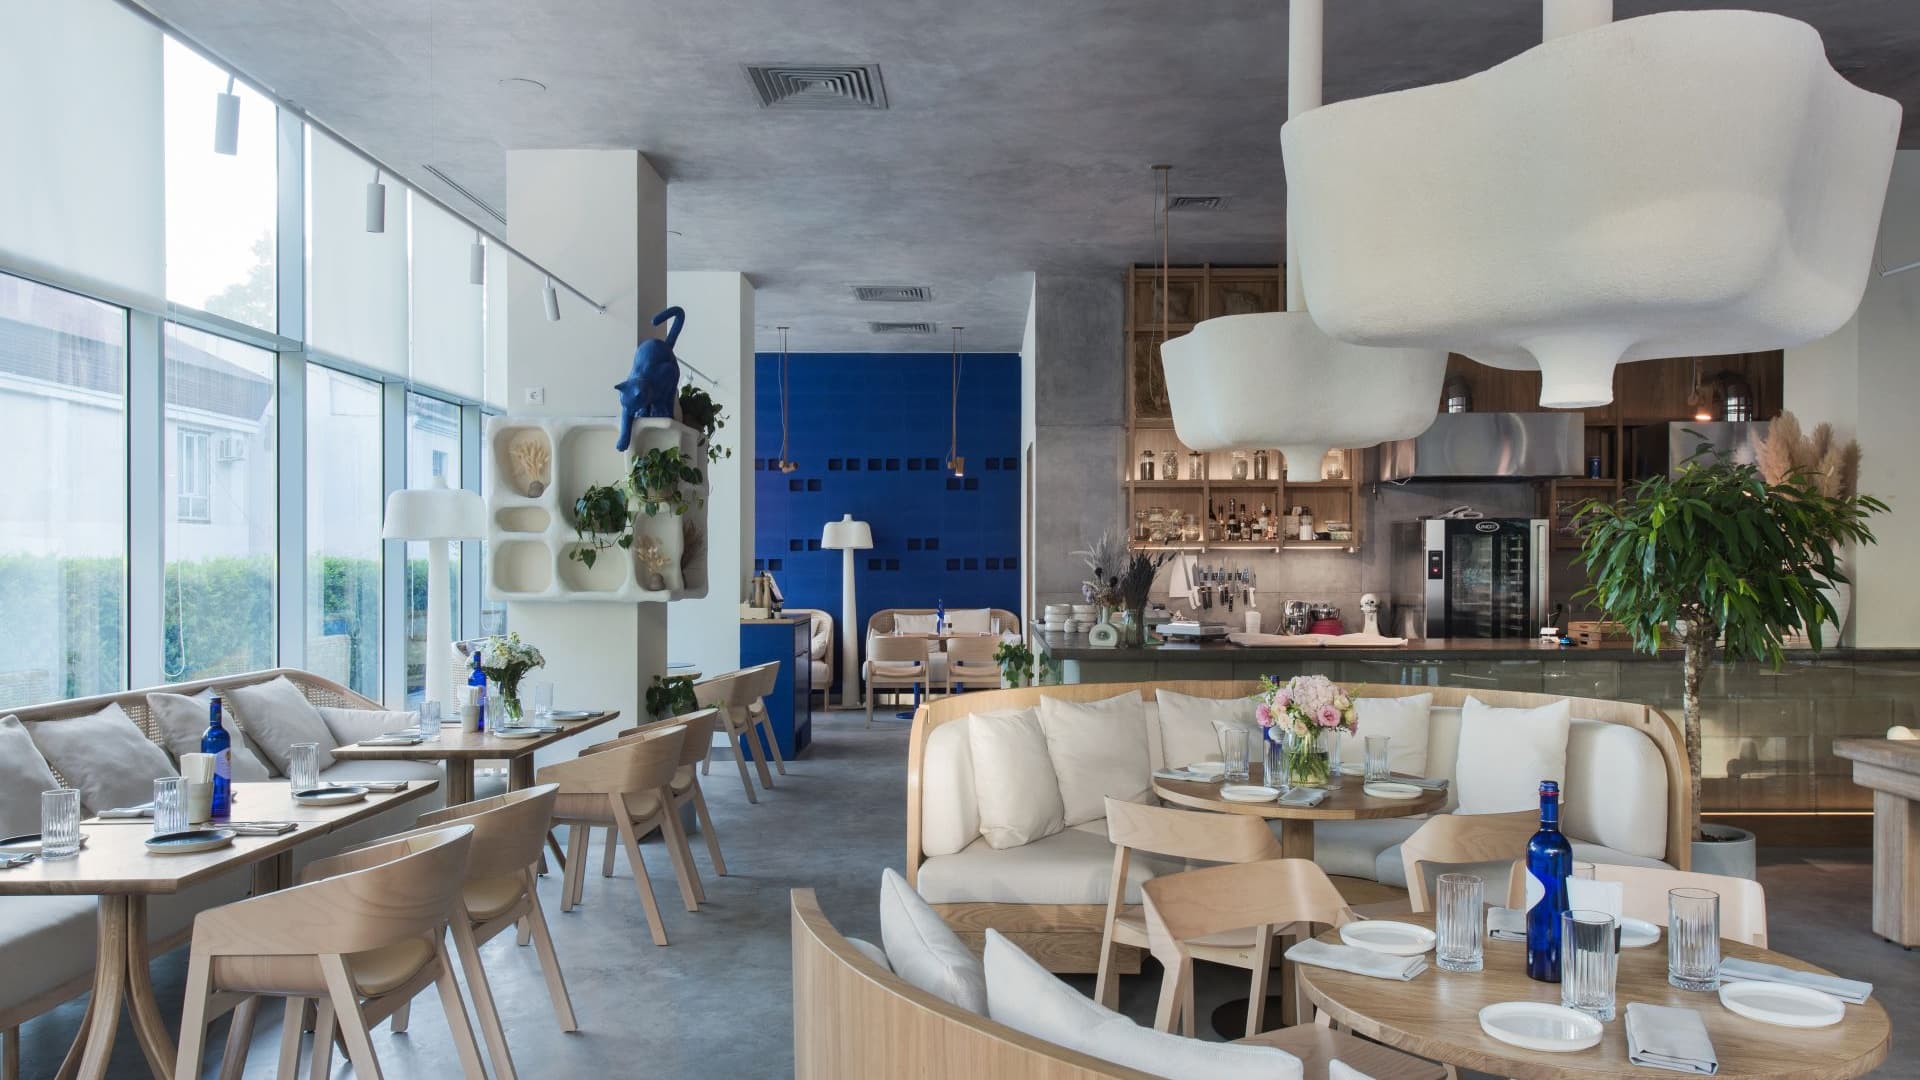 Контрастный интерьер кофейни с ярко-синими акцентами – проект бюро ARCHPOINT